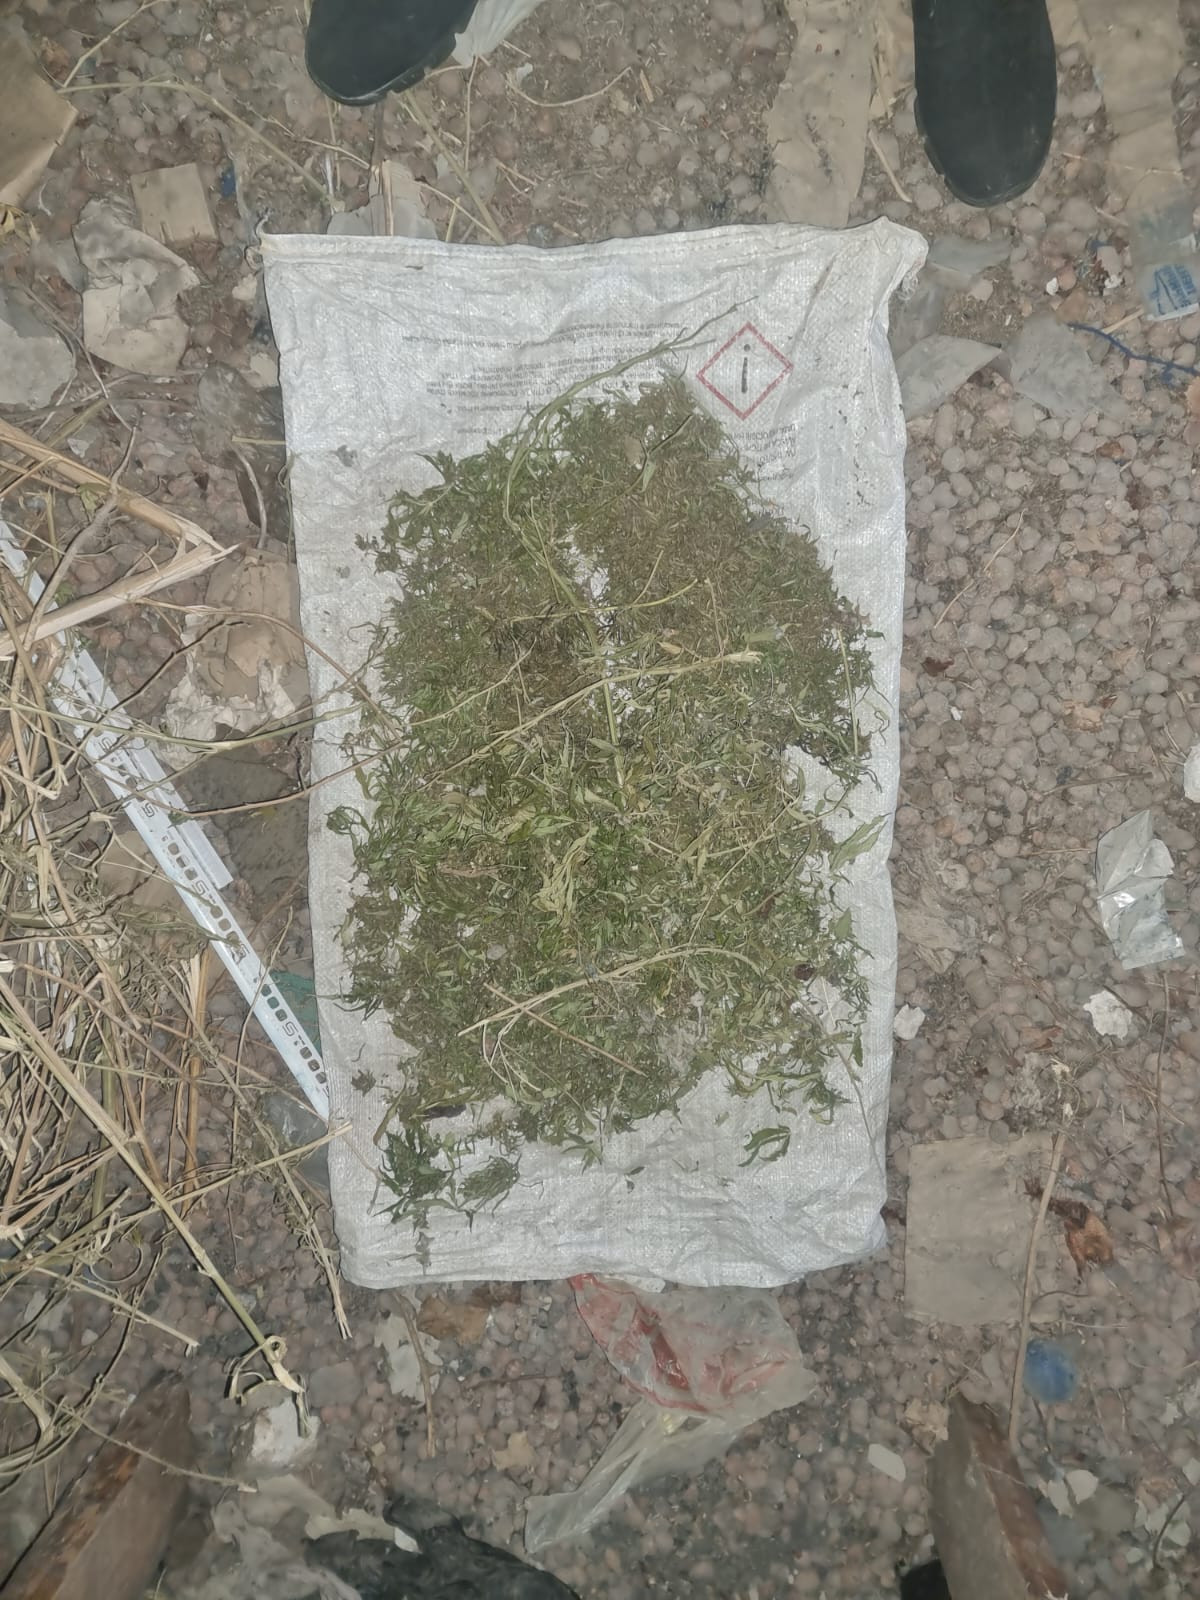 600 граммов марихуаны изъяли оперативники у жителя Предгорья